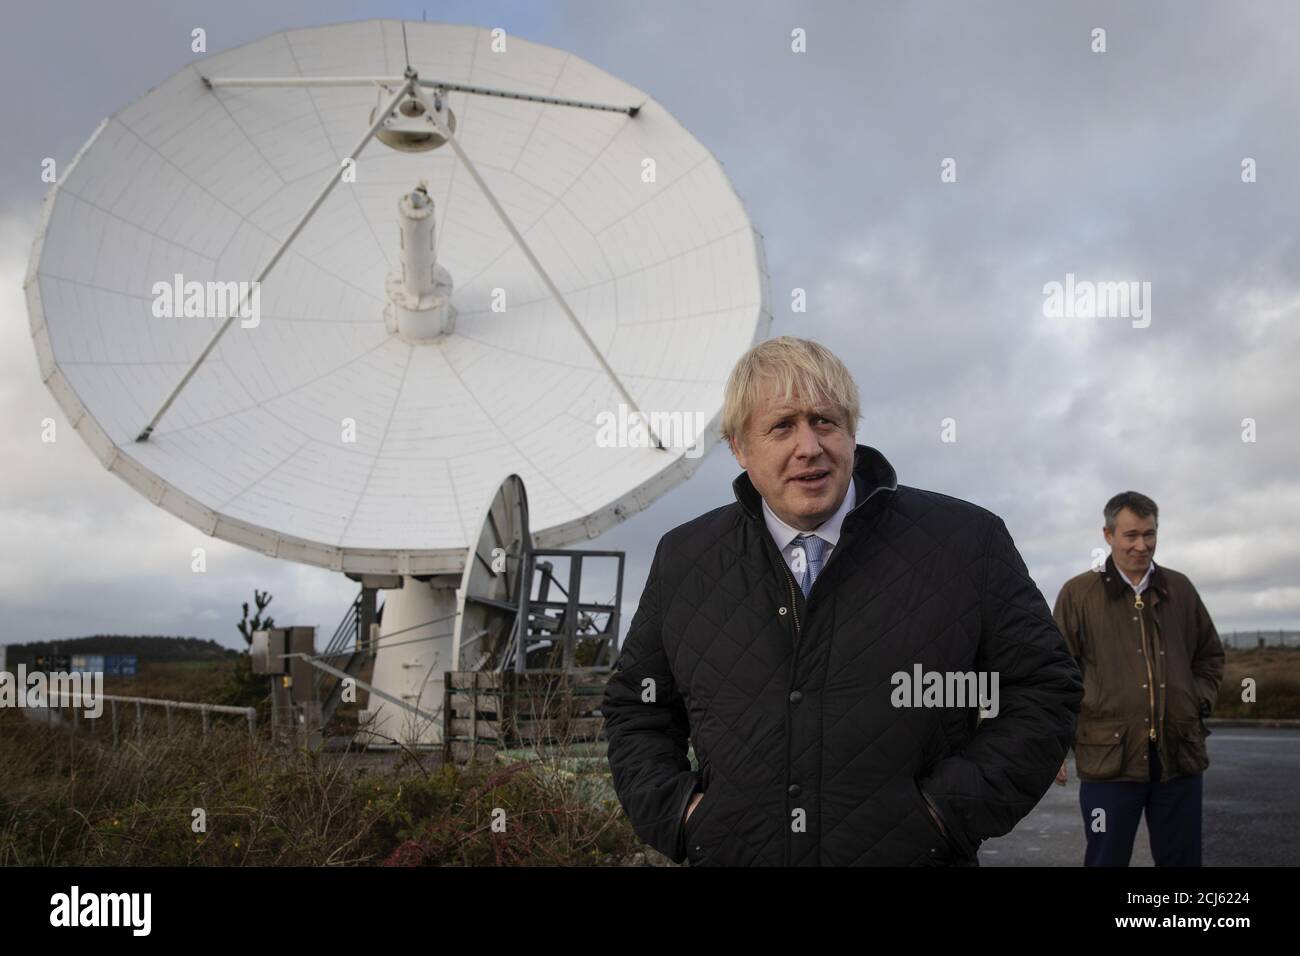 El primer ministro británico Boris Johnson se muestra alrededor de platos satelitales propiedad de la compañía de telecomunicaciones Avanti por el director de tecnología, Scott Richardson, en la estación terrestre de Goonhilly, en Helston, Gran Bretaña, el 27 de noviembre de 2019. Dan Kitwood/Pool vía REUTERS Foto de stock